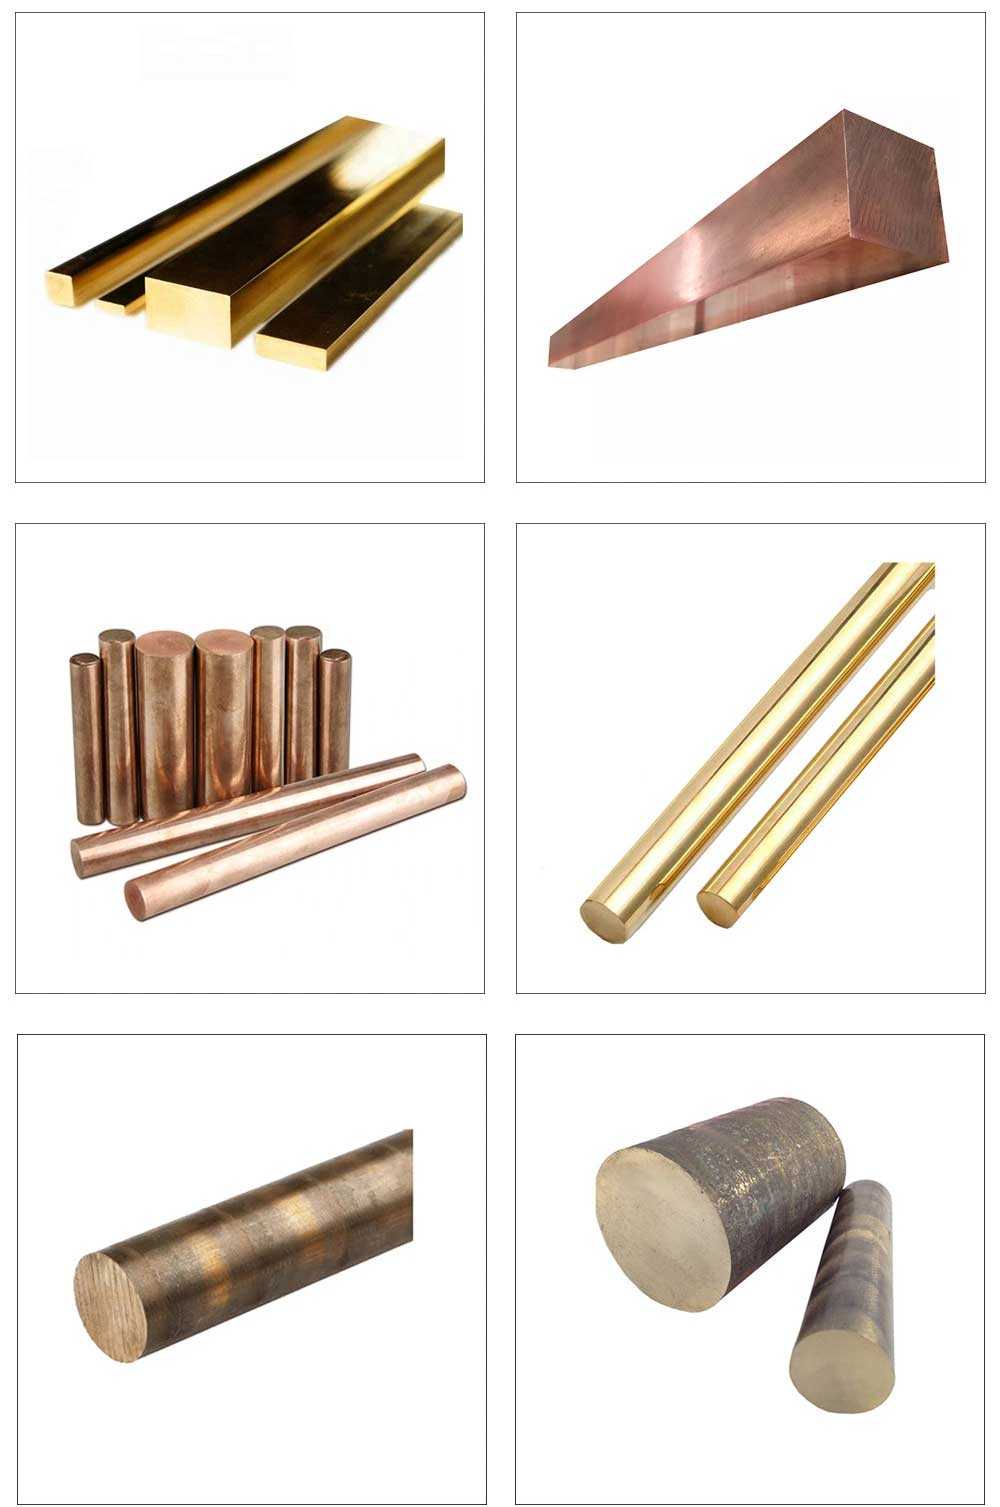 copper-rod